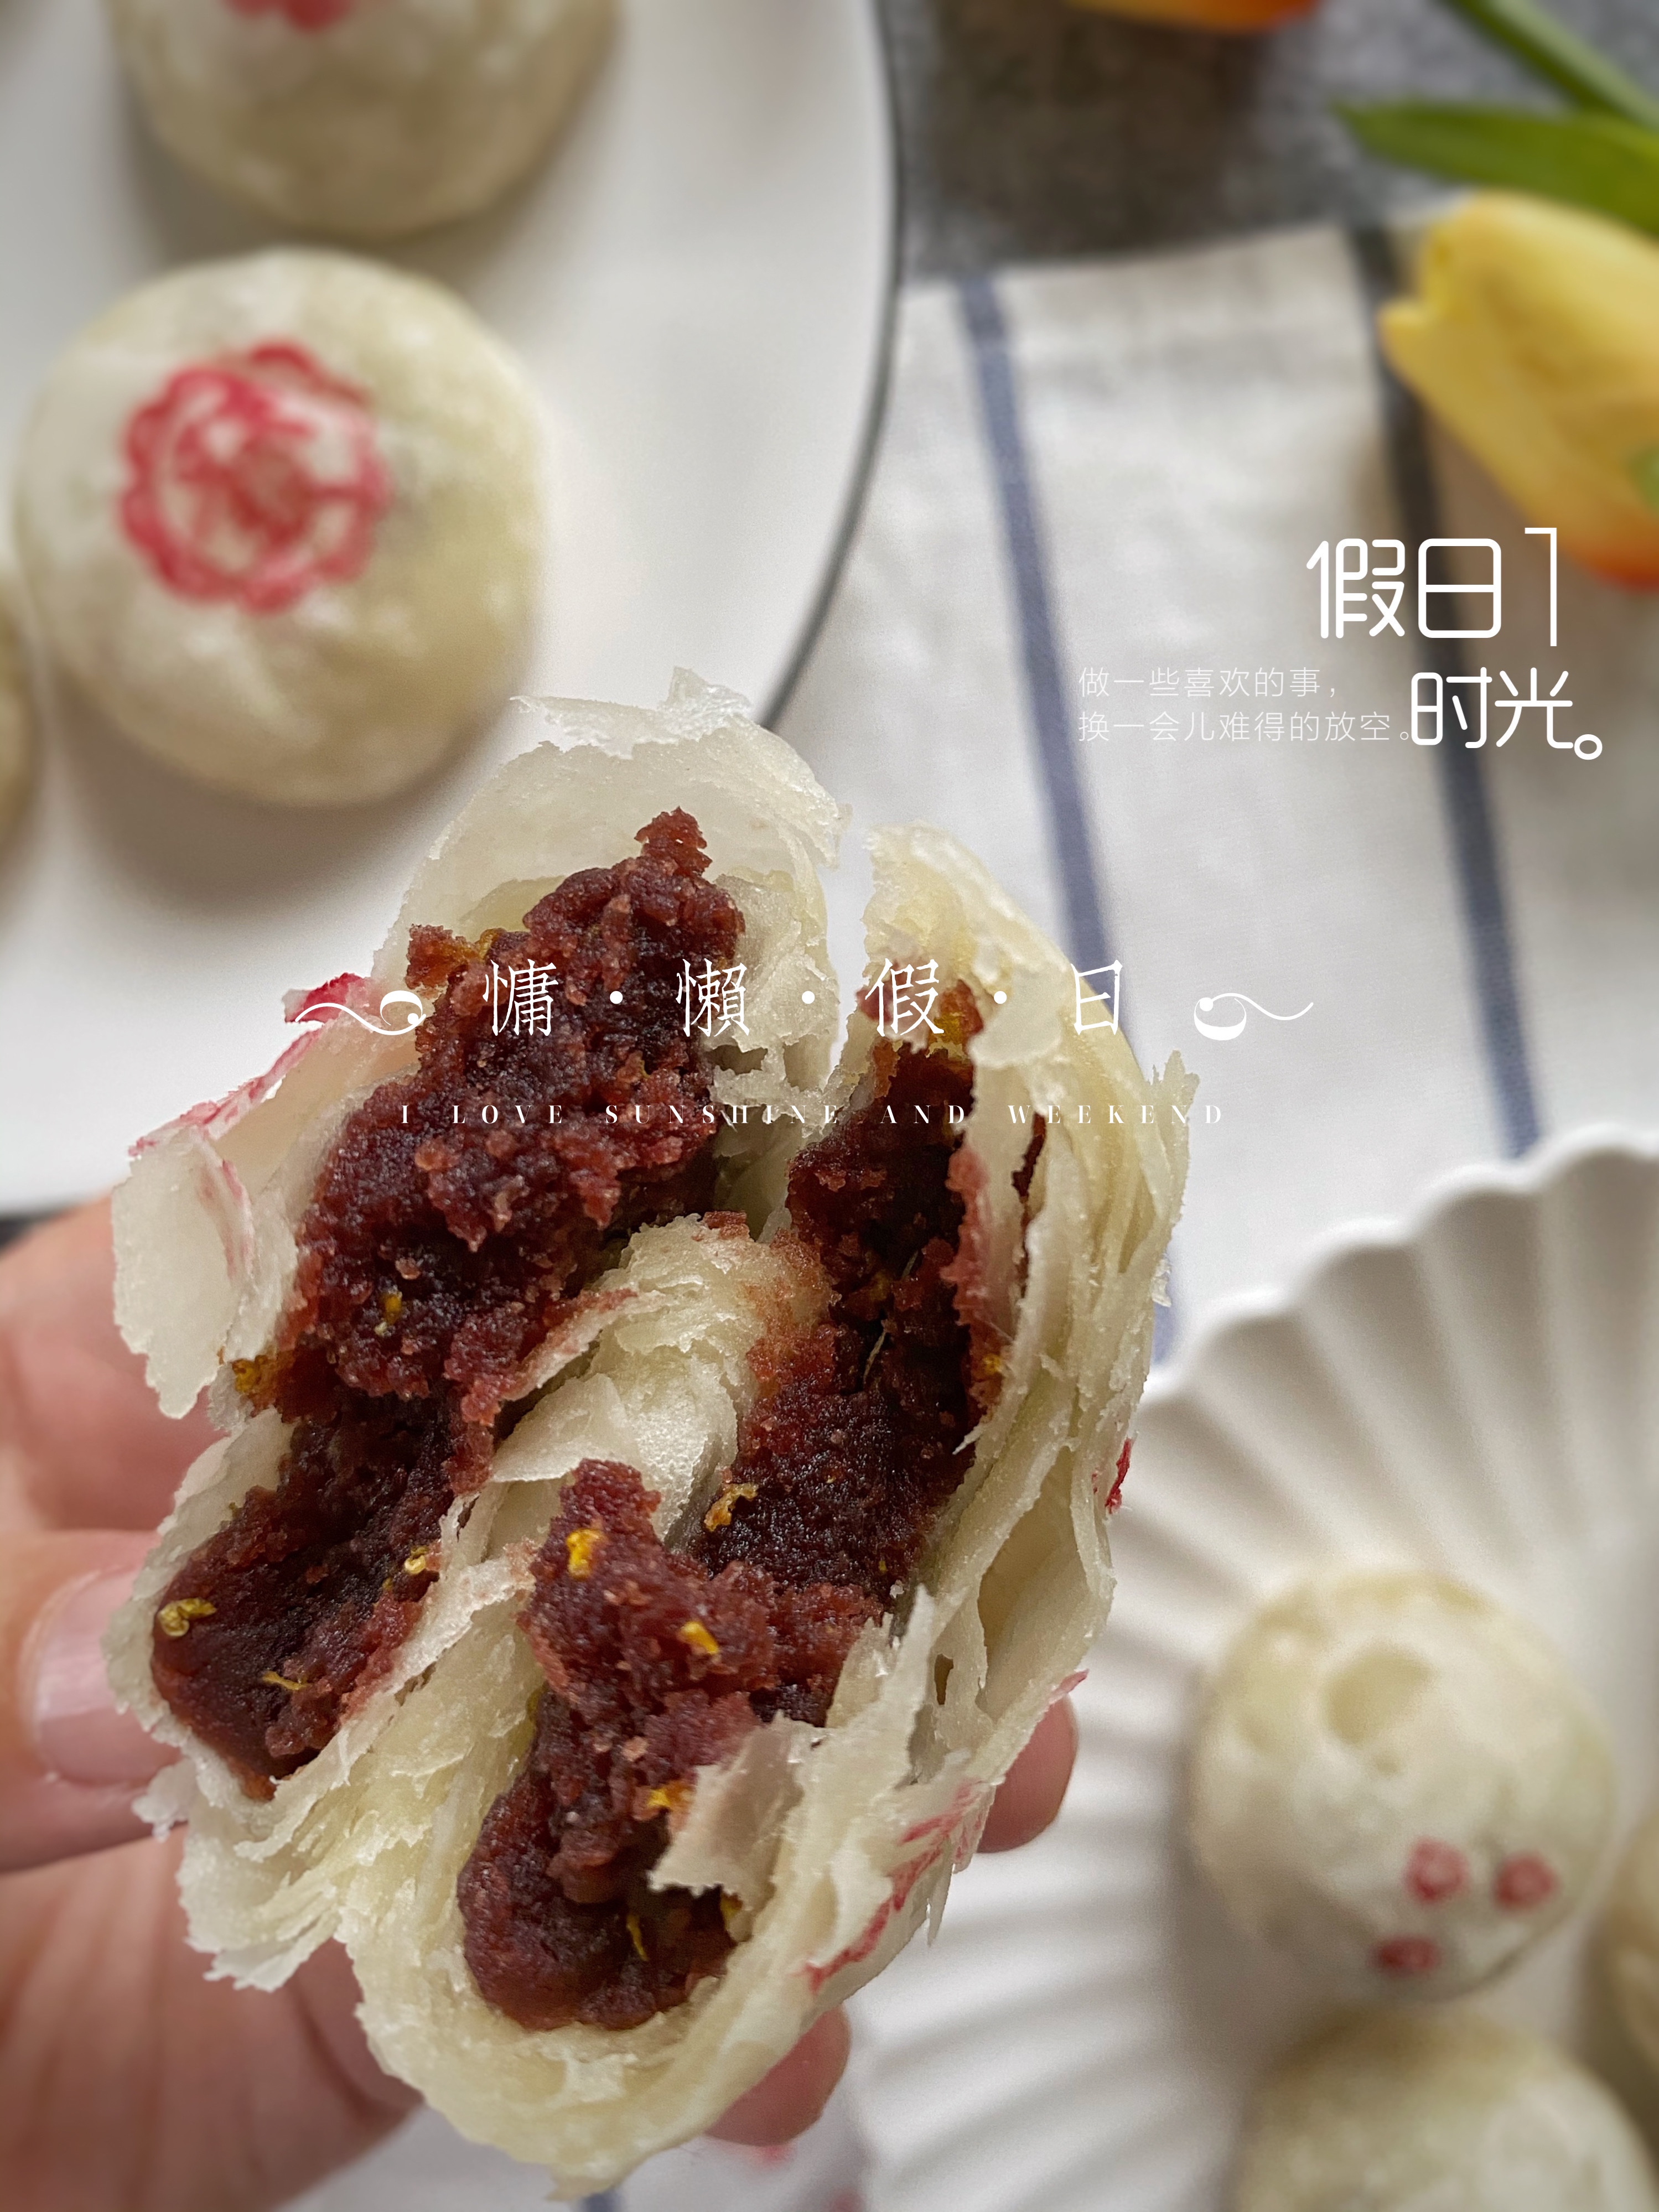 中式酥皮点心第五弹——迷你红豆酥。植物油开酥，两分钟出膜的做法